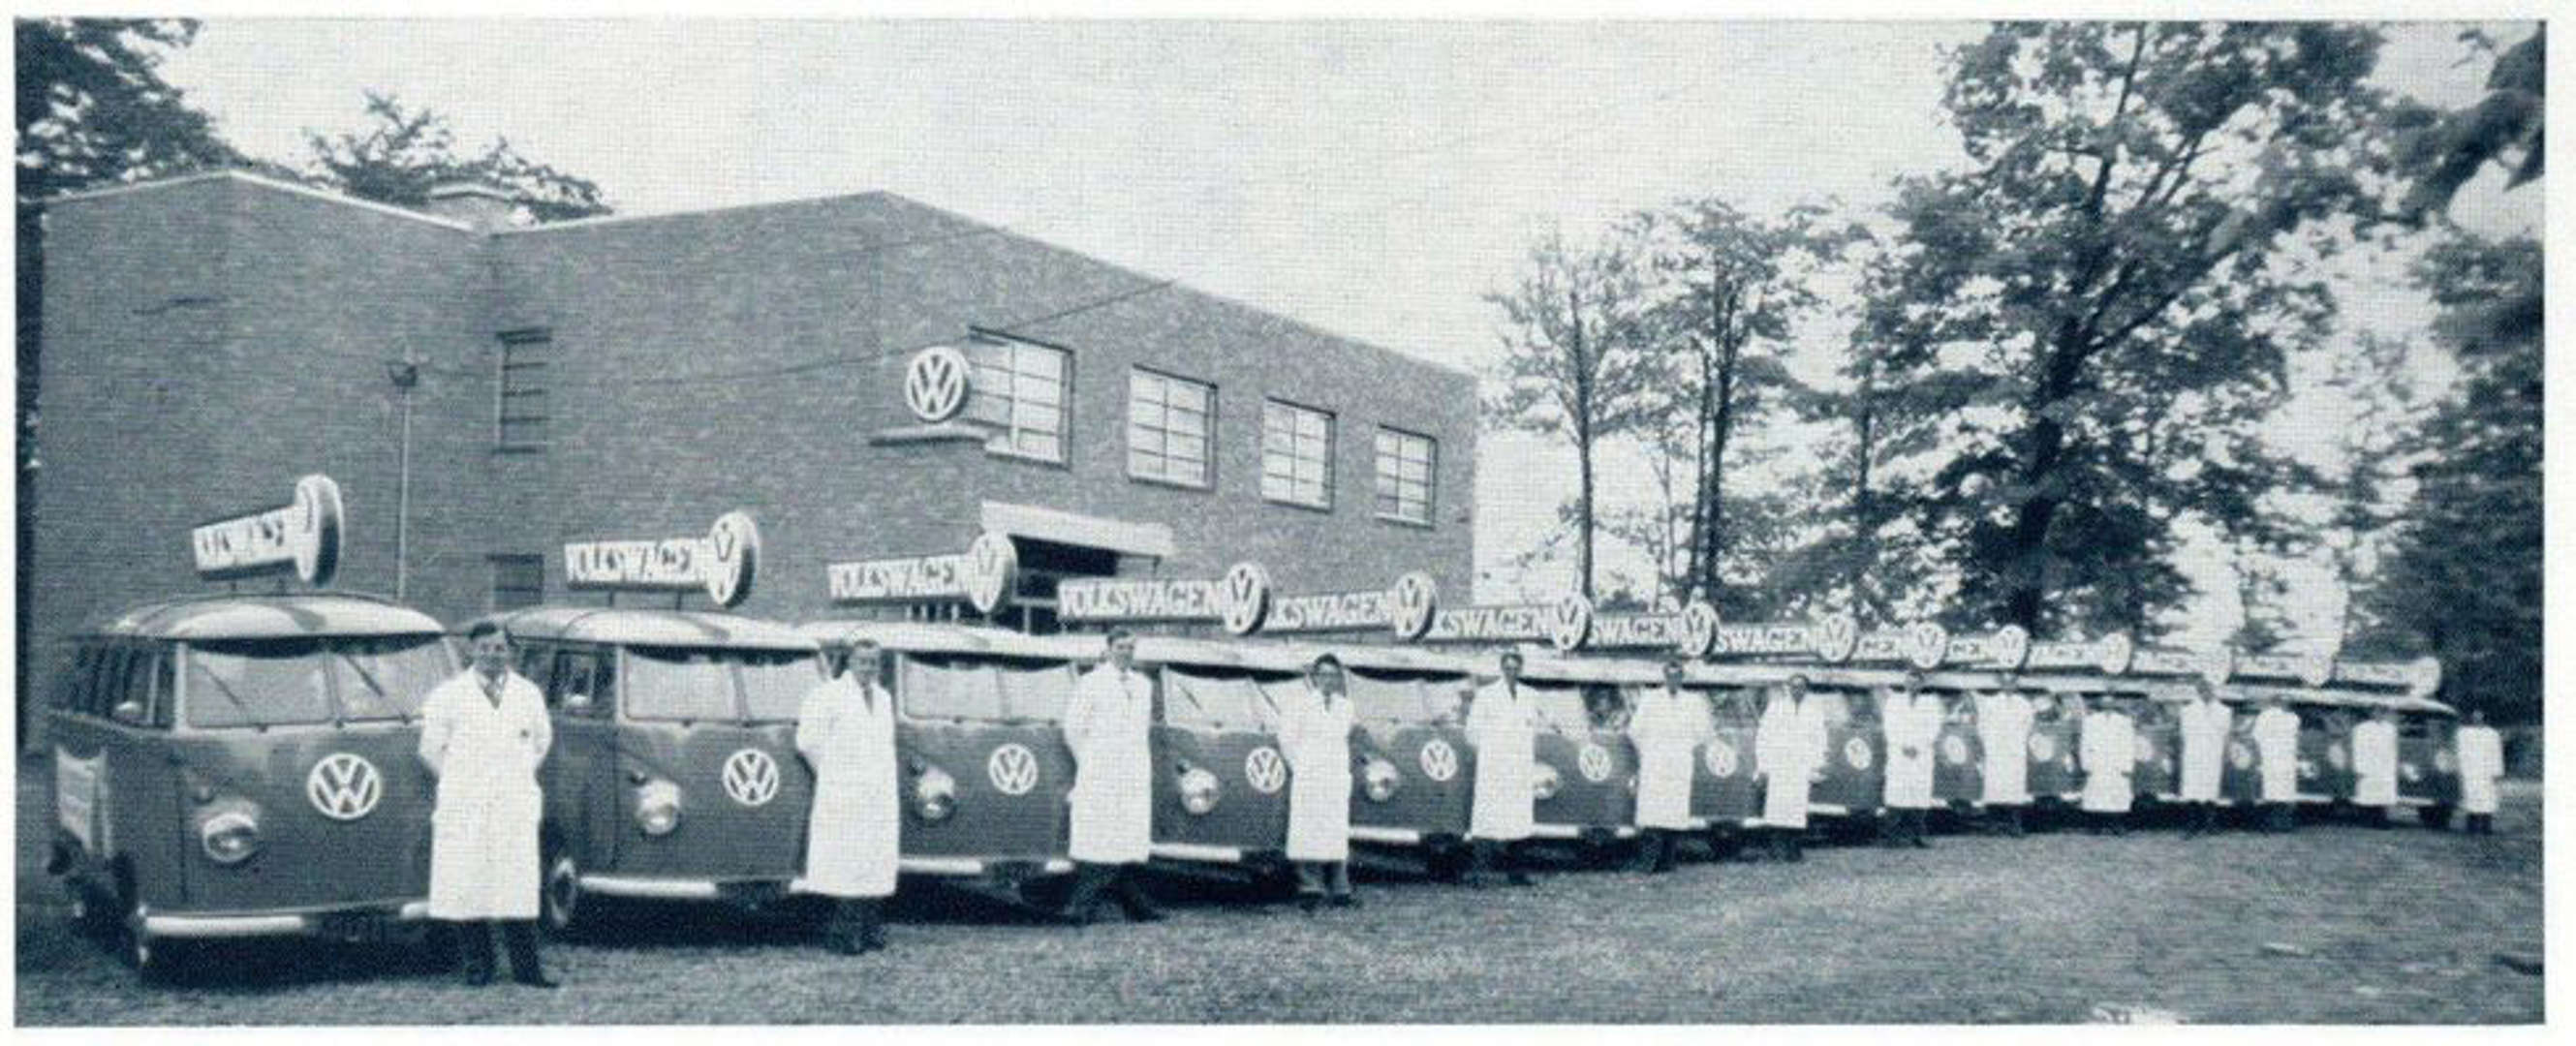 Volkswagen's Mobile Service School Van Group Picture at Englewood Cliffs, New Jersey.